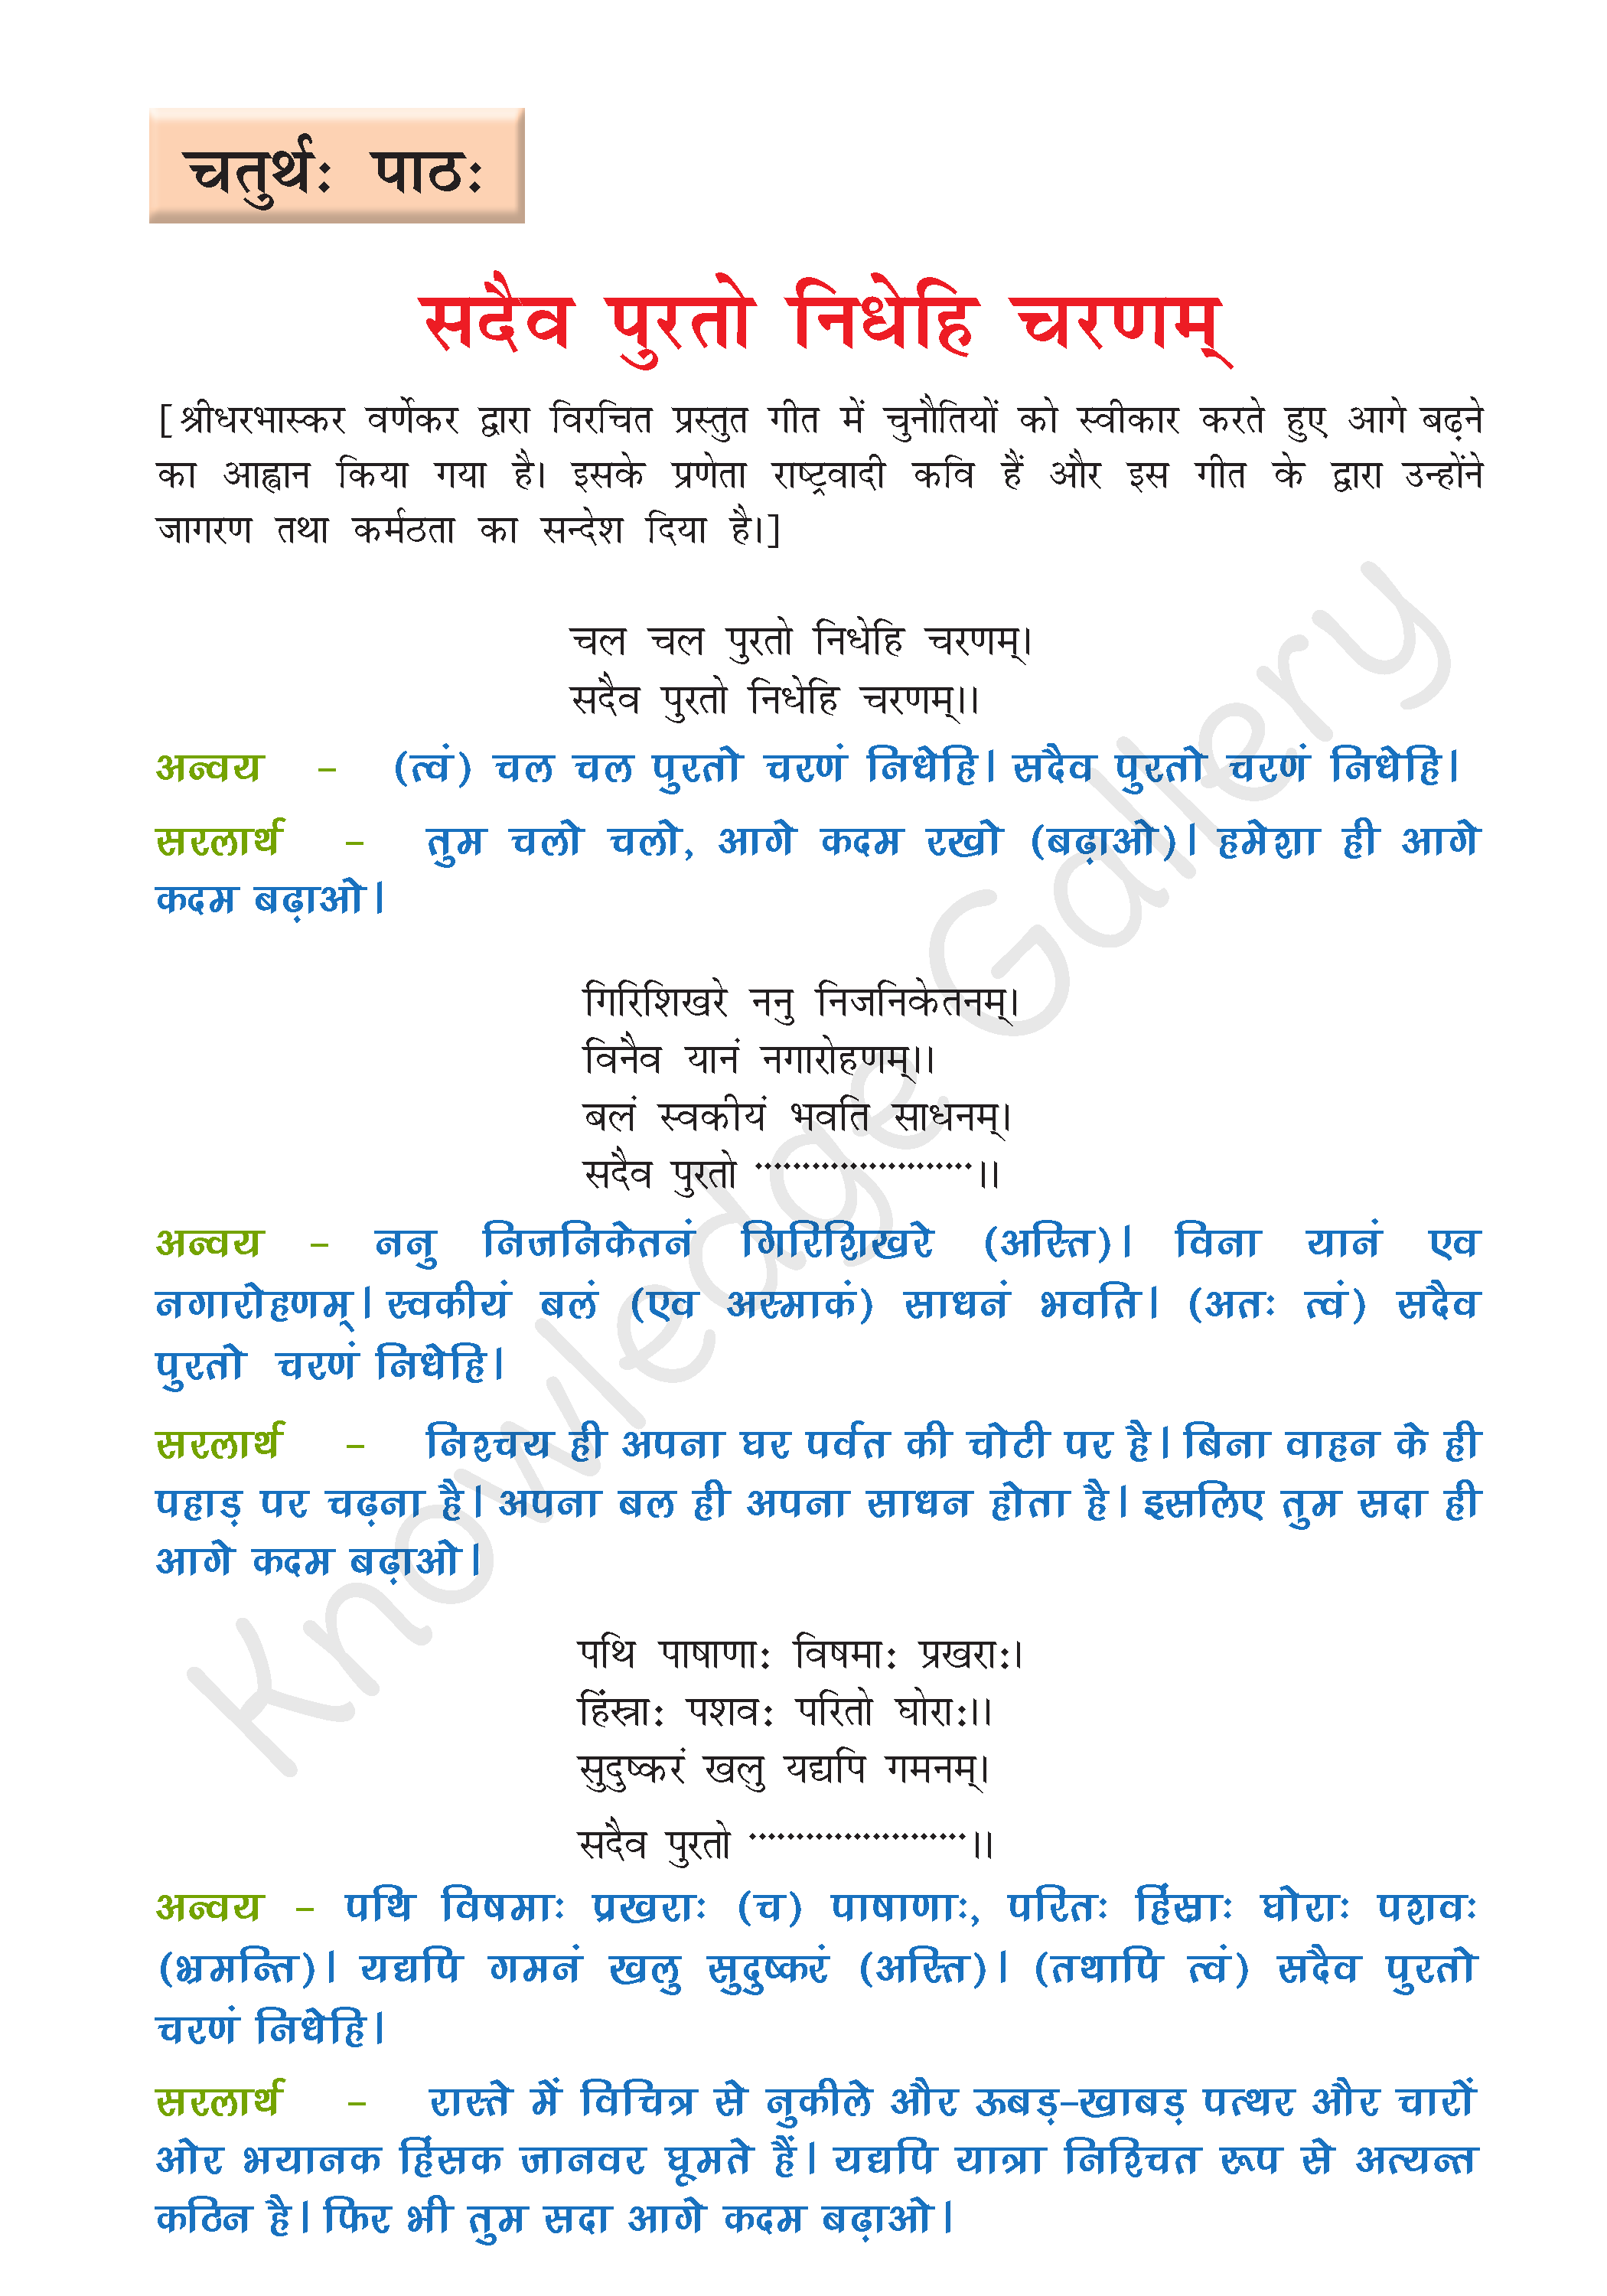 NCERT Solution For Class 8 Sanskrit Chapter 4 part 1